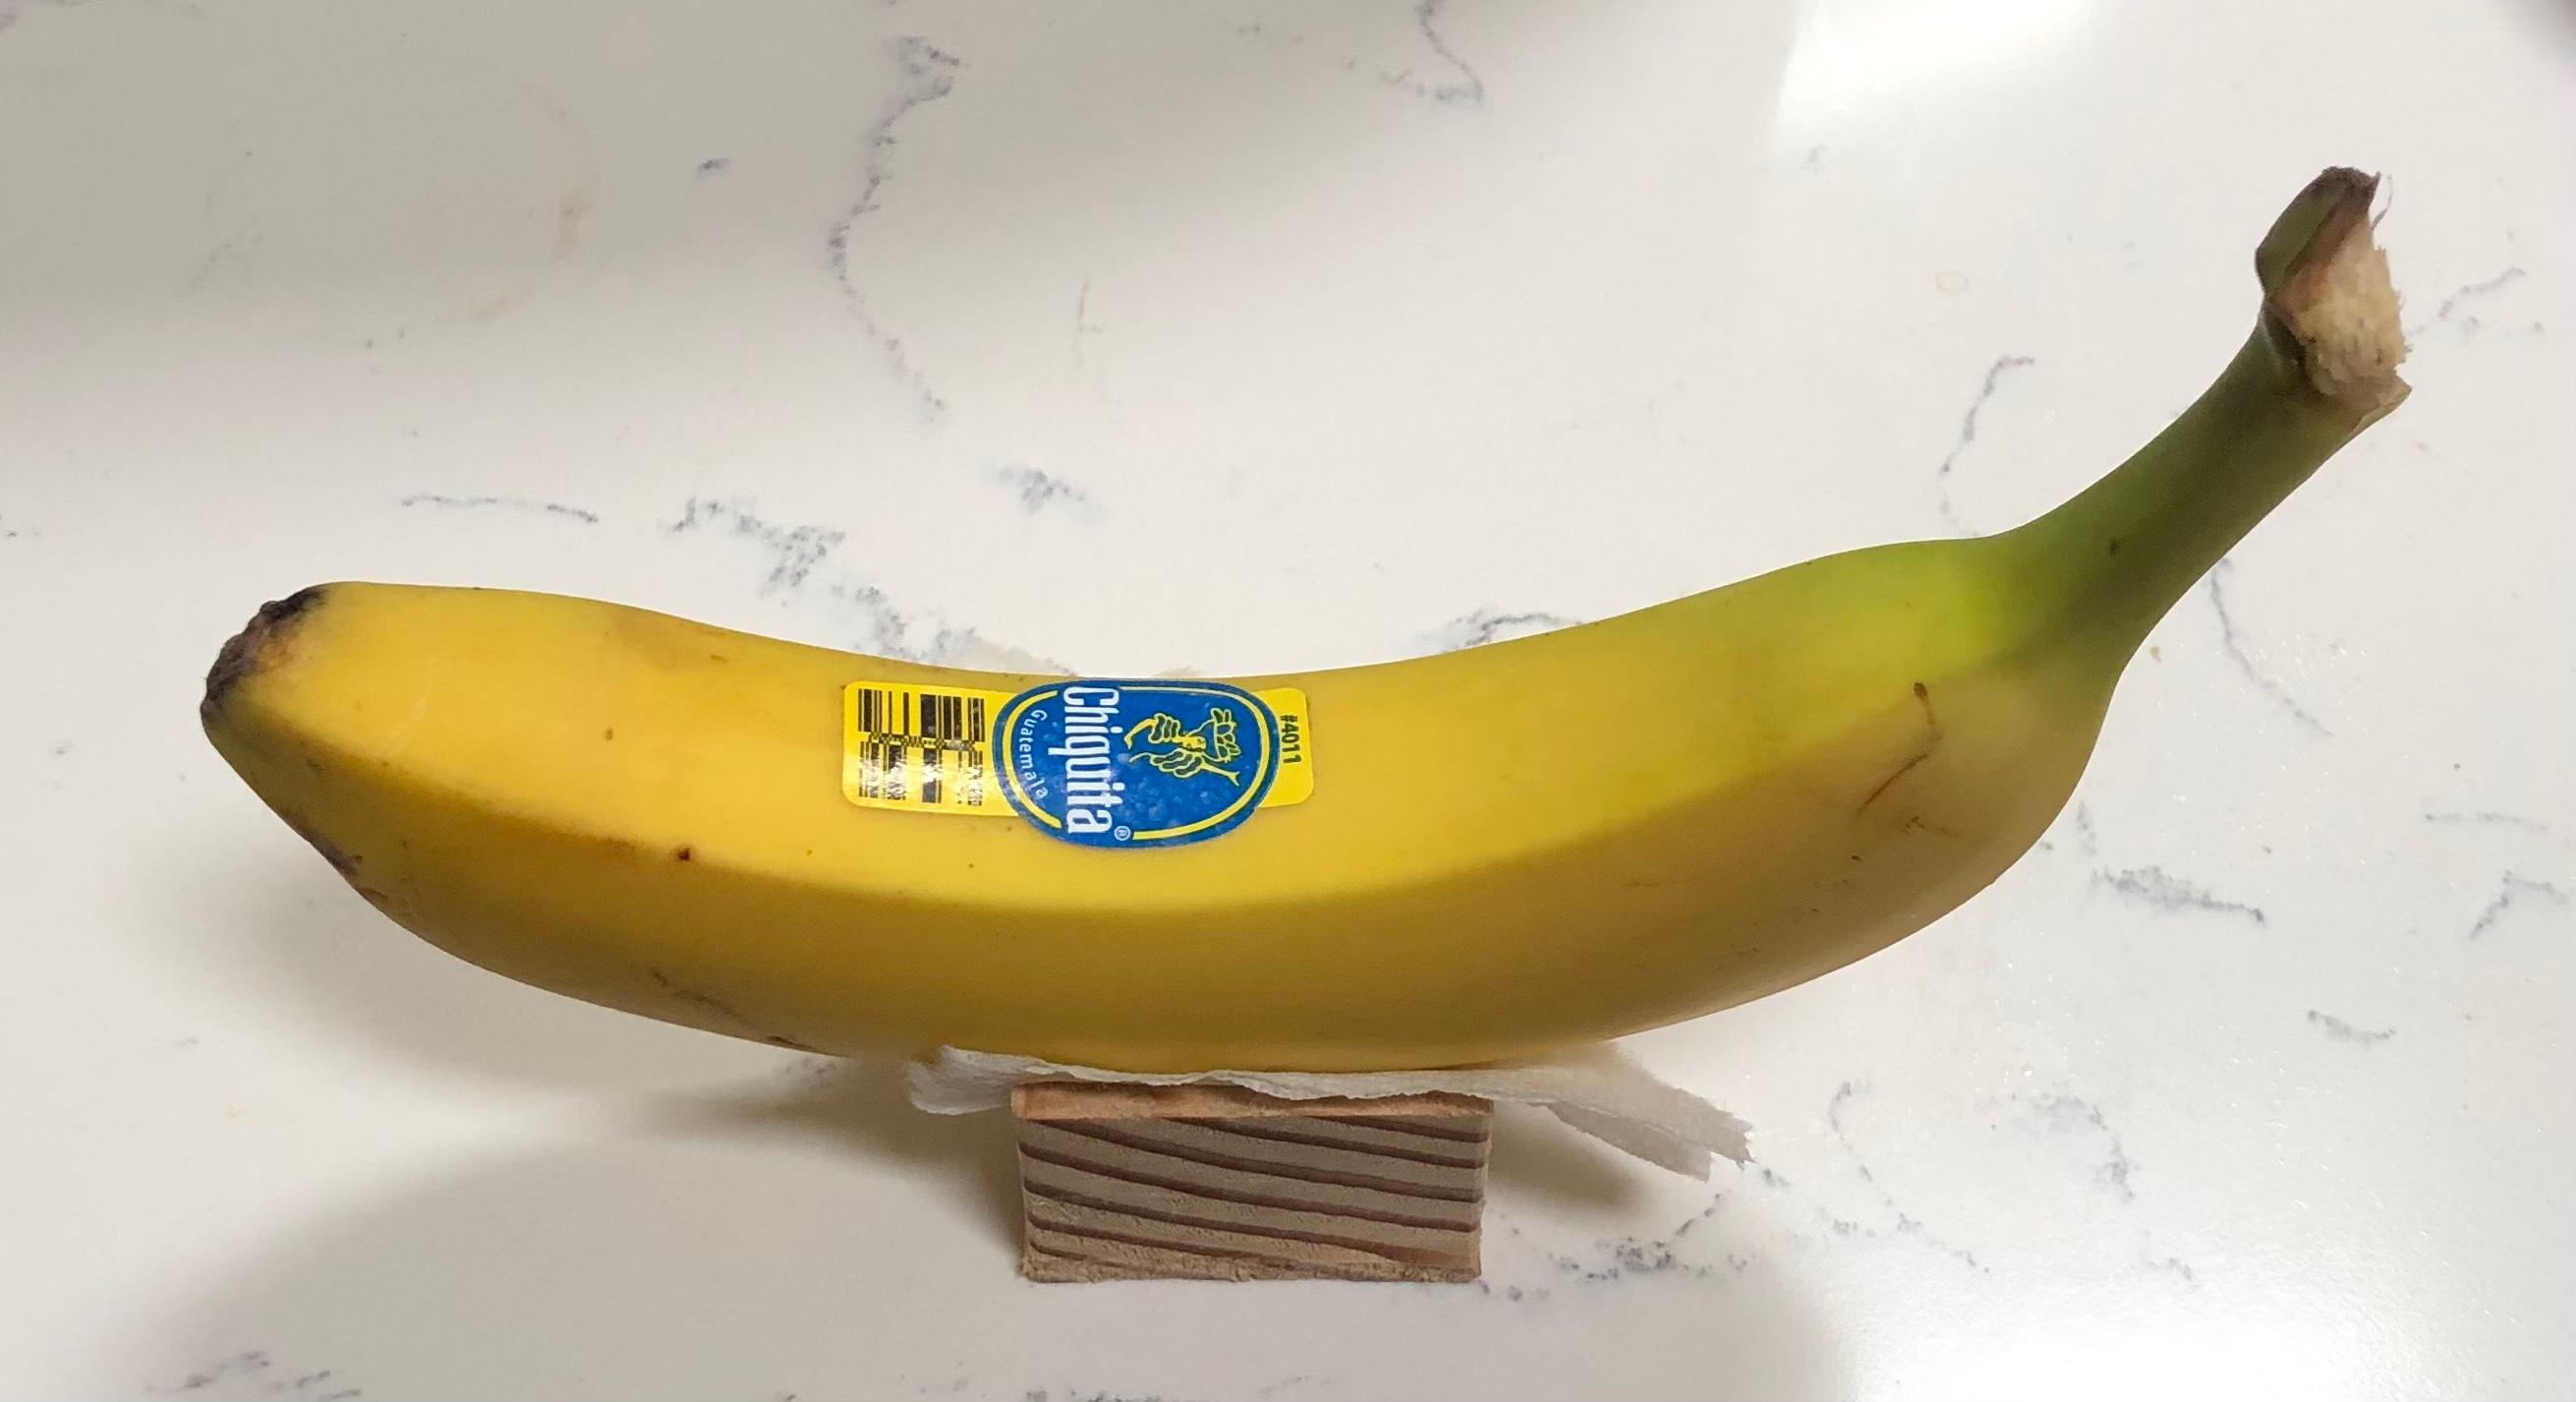 banana holder 2.0 3d model